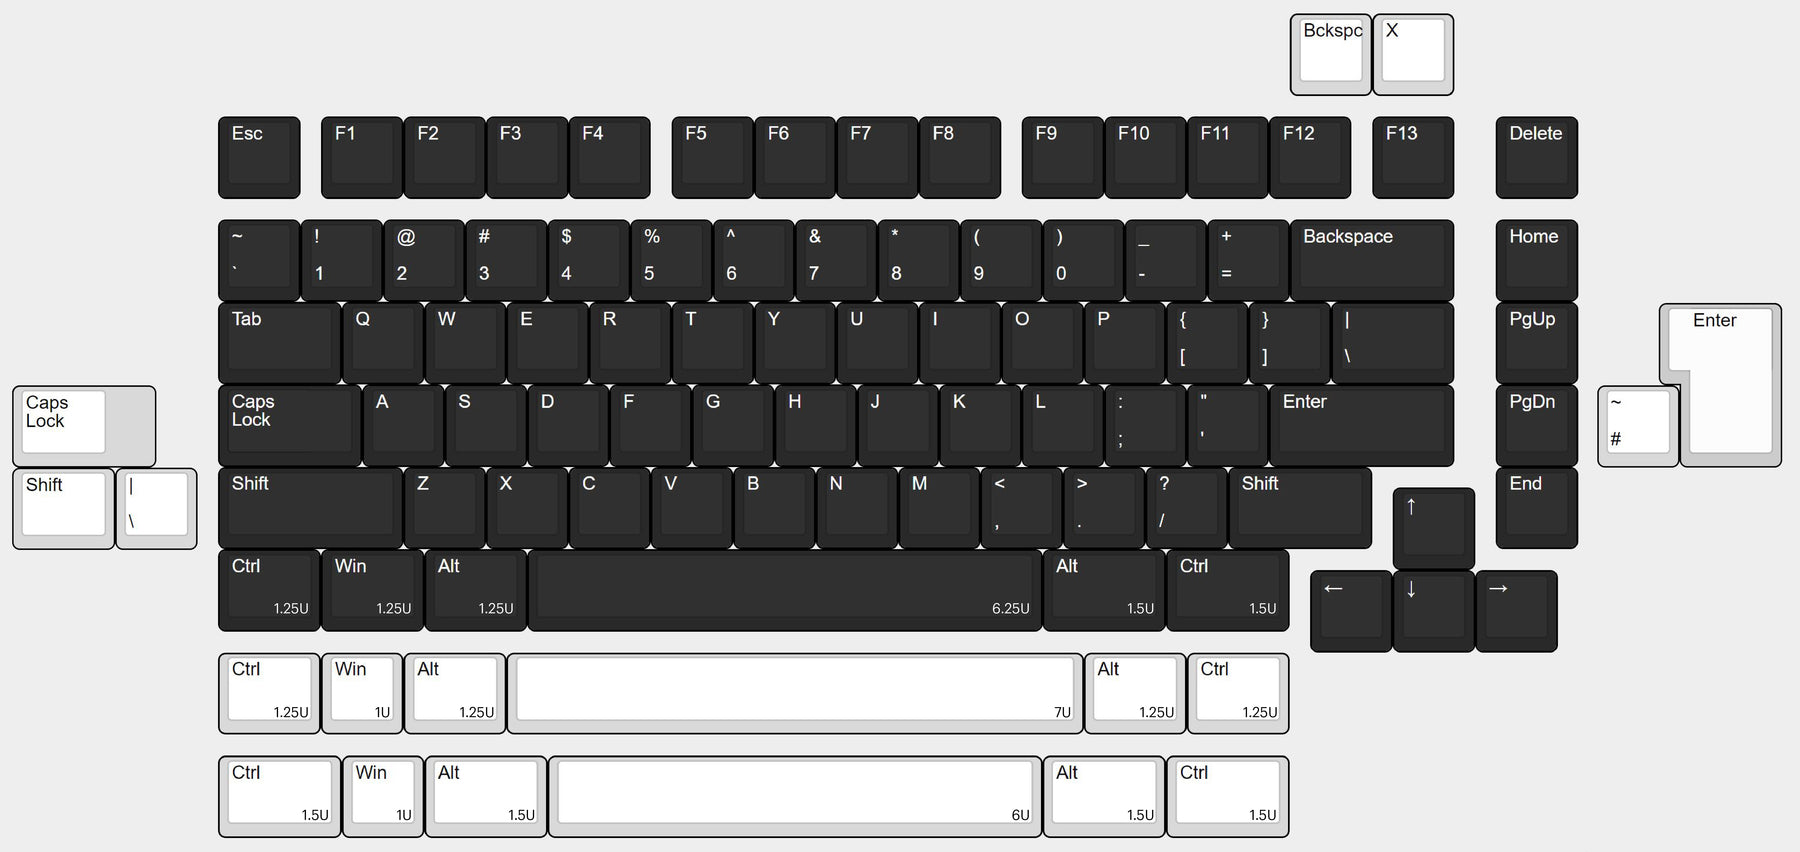 Box75 Keyboard Kit